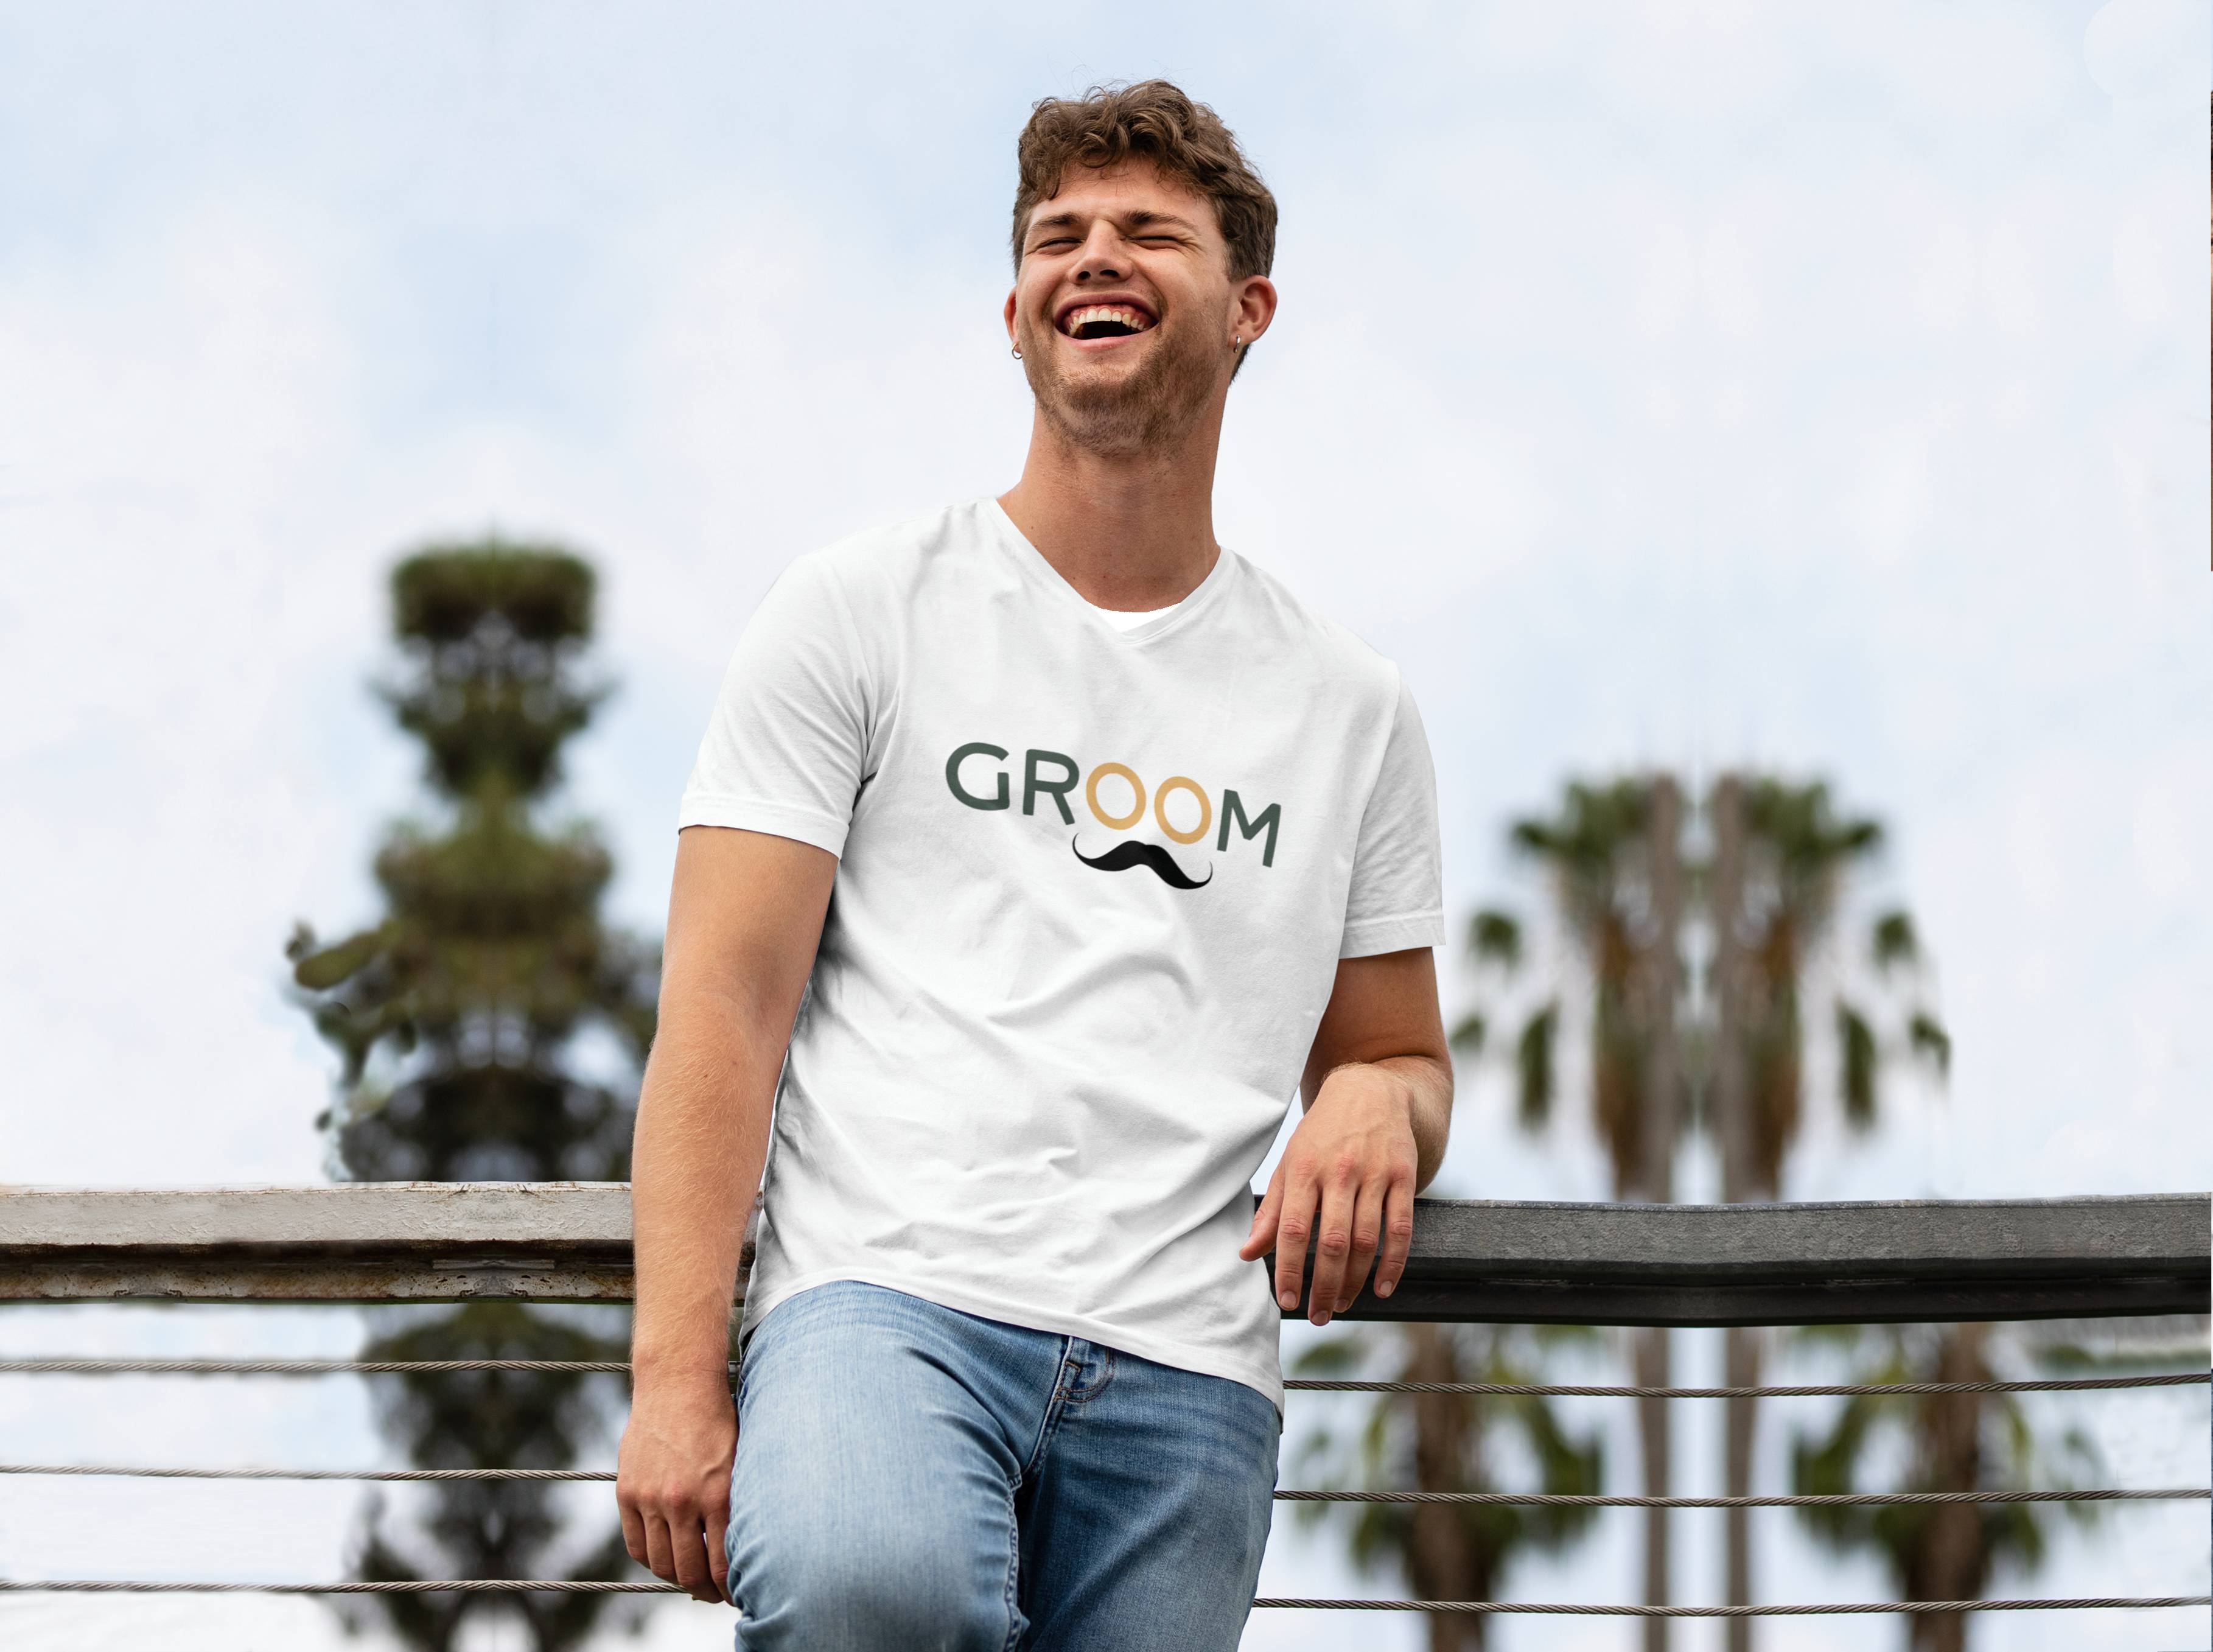 Personal Pánske tričko - Groom Farba: biela, Veľkosť - dospelý: S